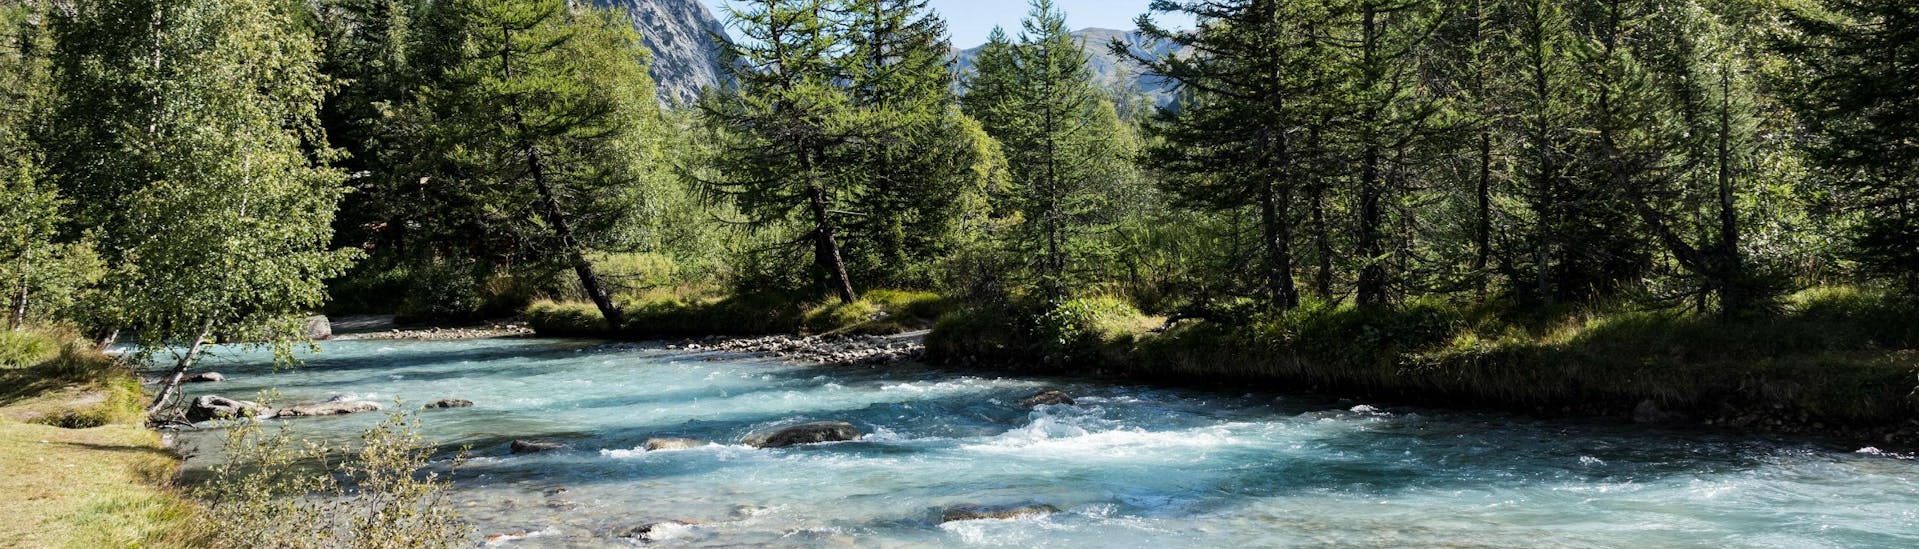 Un'immagine del pittoresco paesaggio montano che si può ammirare durante il rafting in Valle d'Aosta.